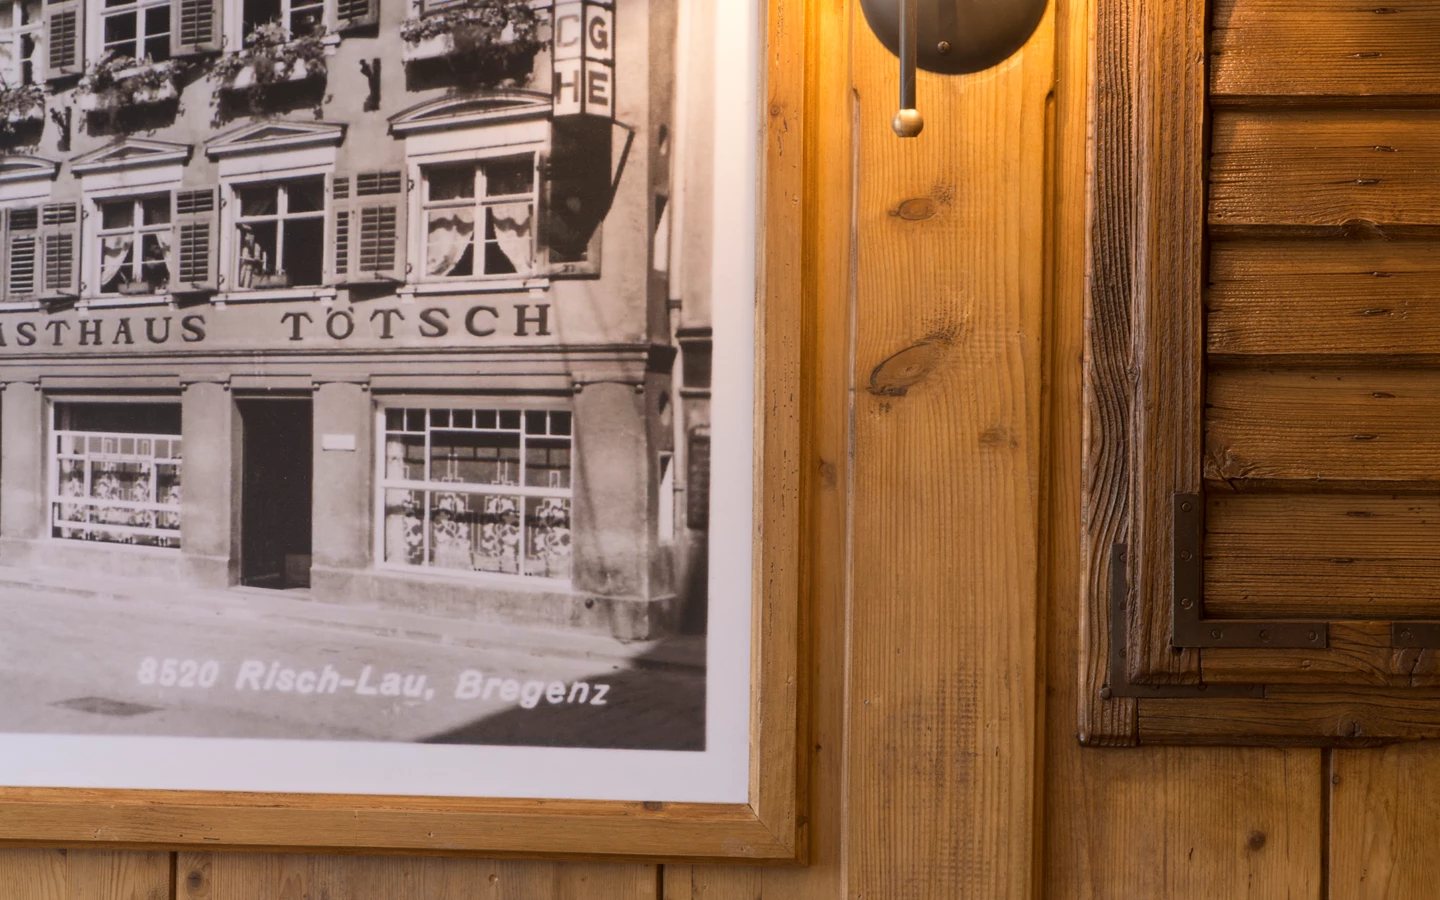 Das Petrus Café Brasserie in Bregenz erstrahlt in neuem Glanz.